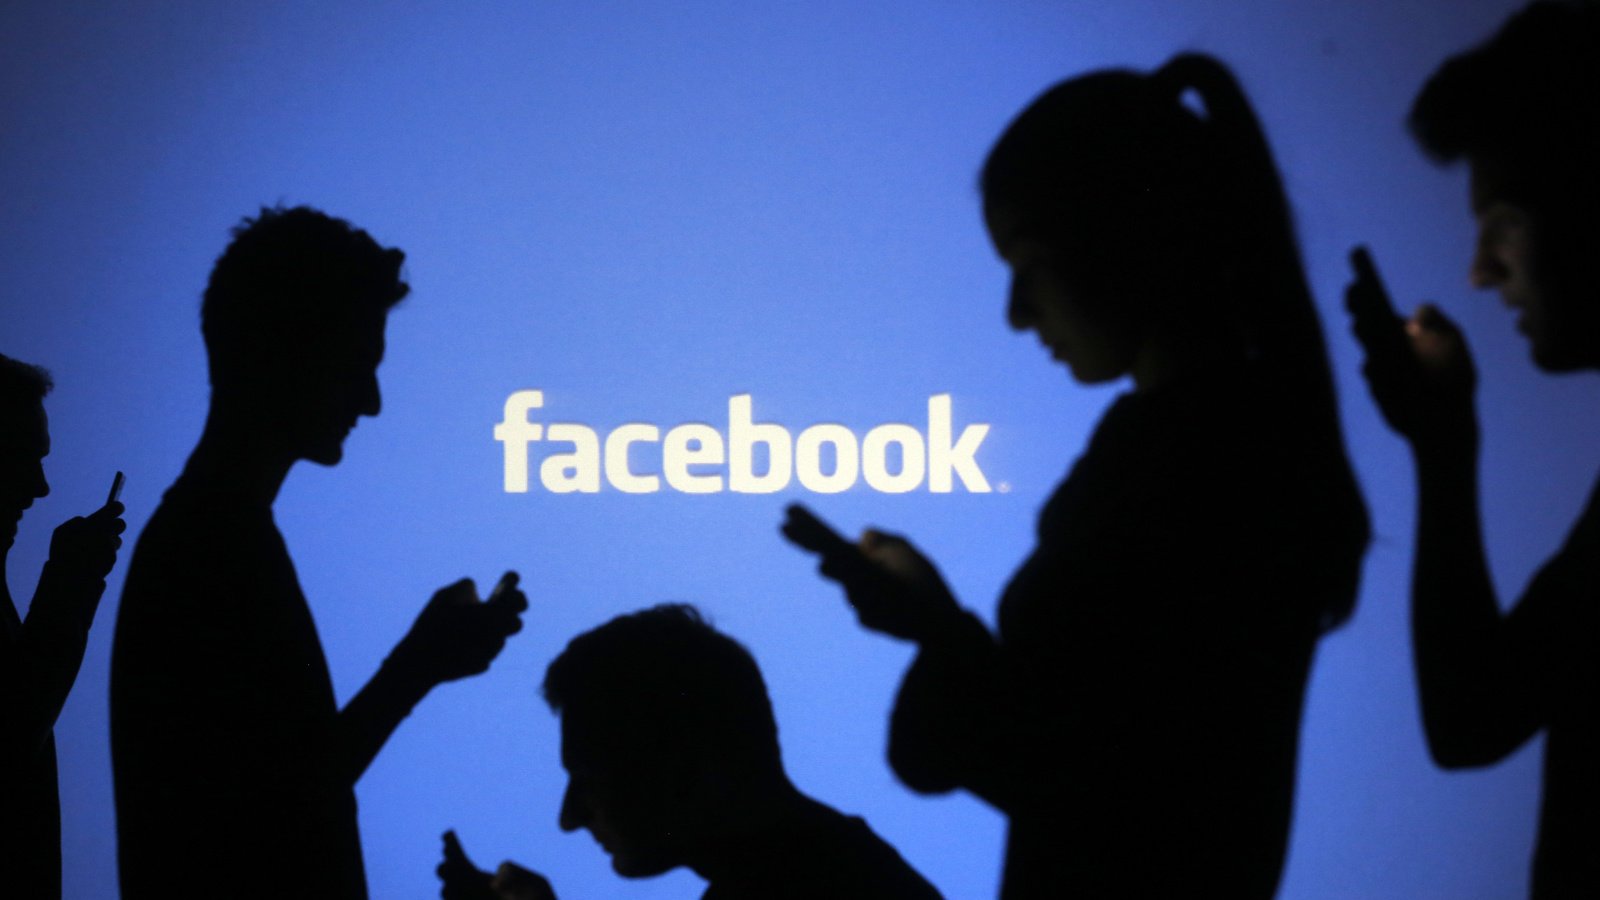 هل تنجح المواعدة على فيس بوك Facebook؟